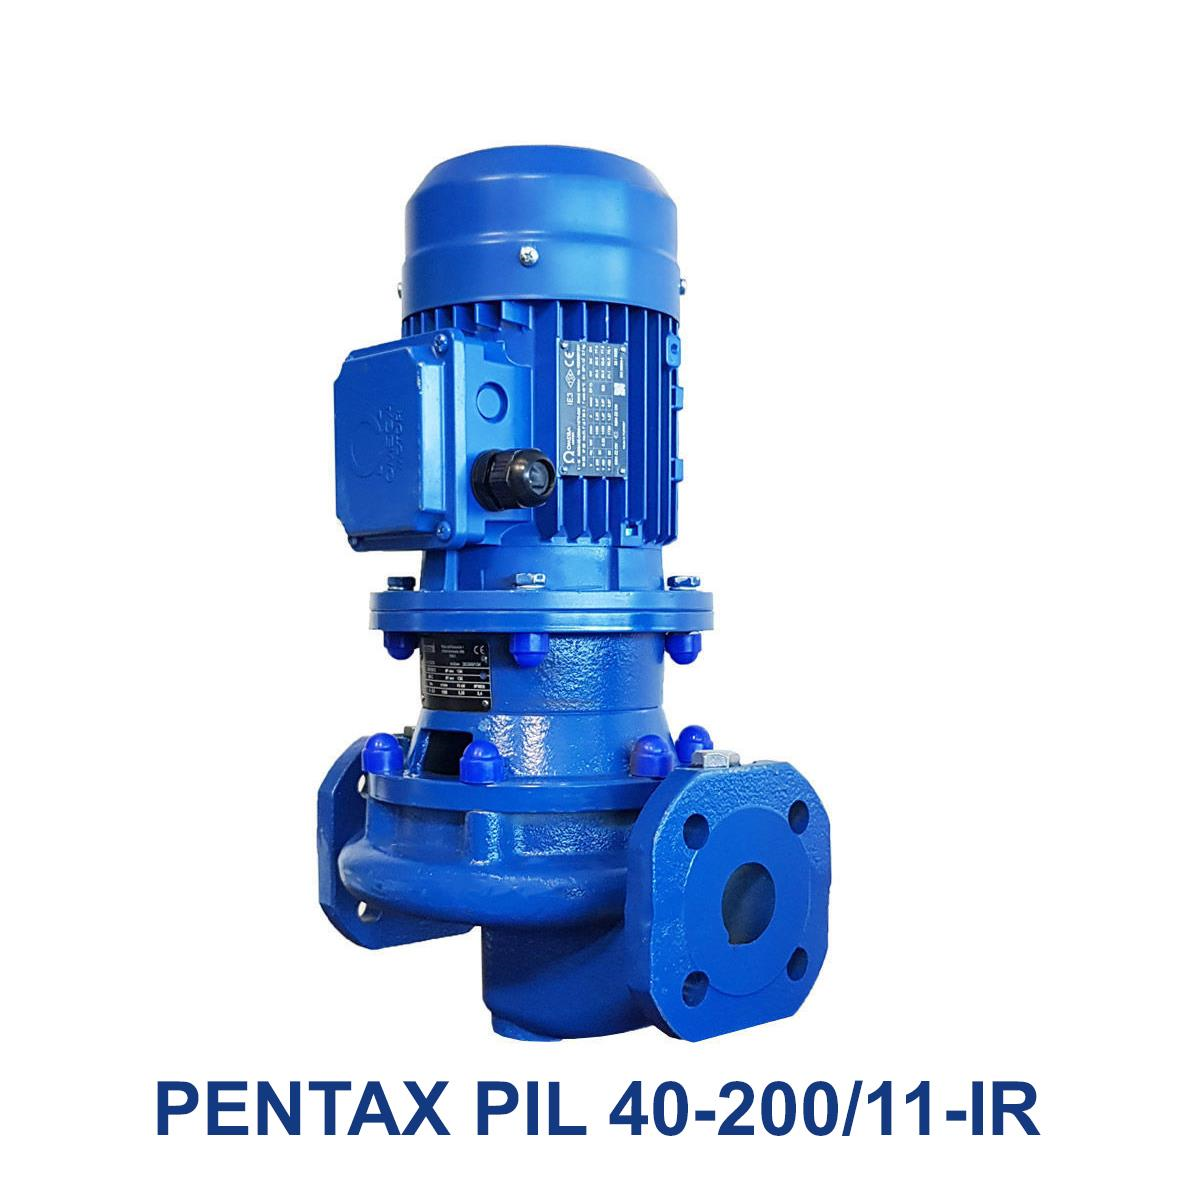 PENTAX-PIL-40-200-11-IR